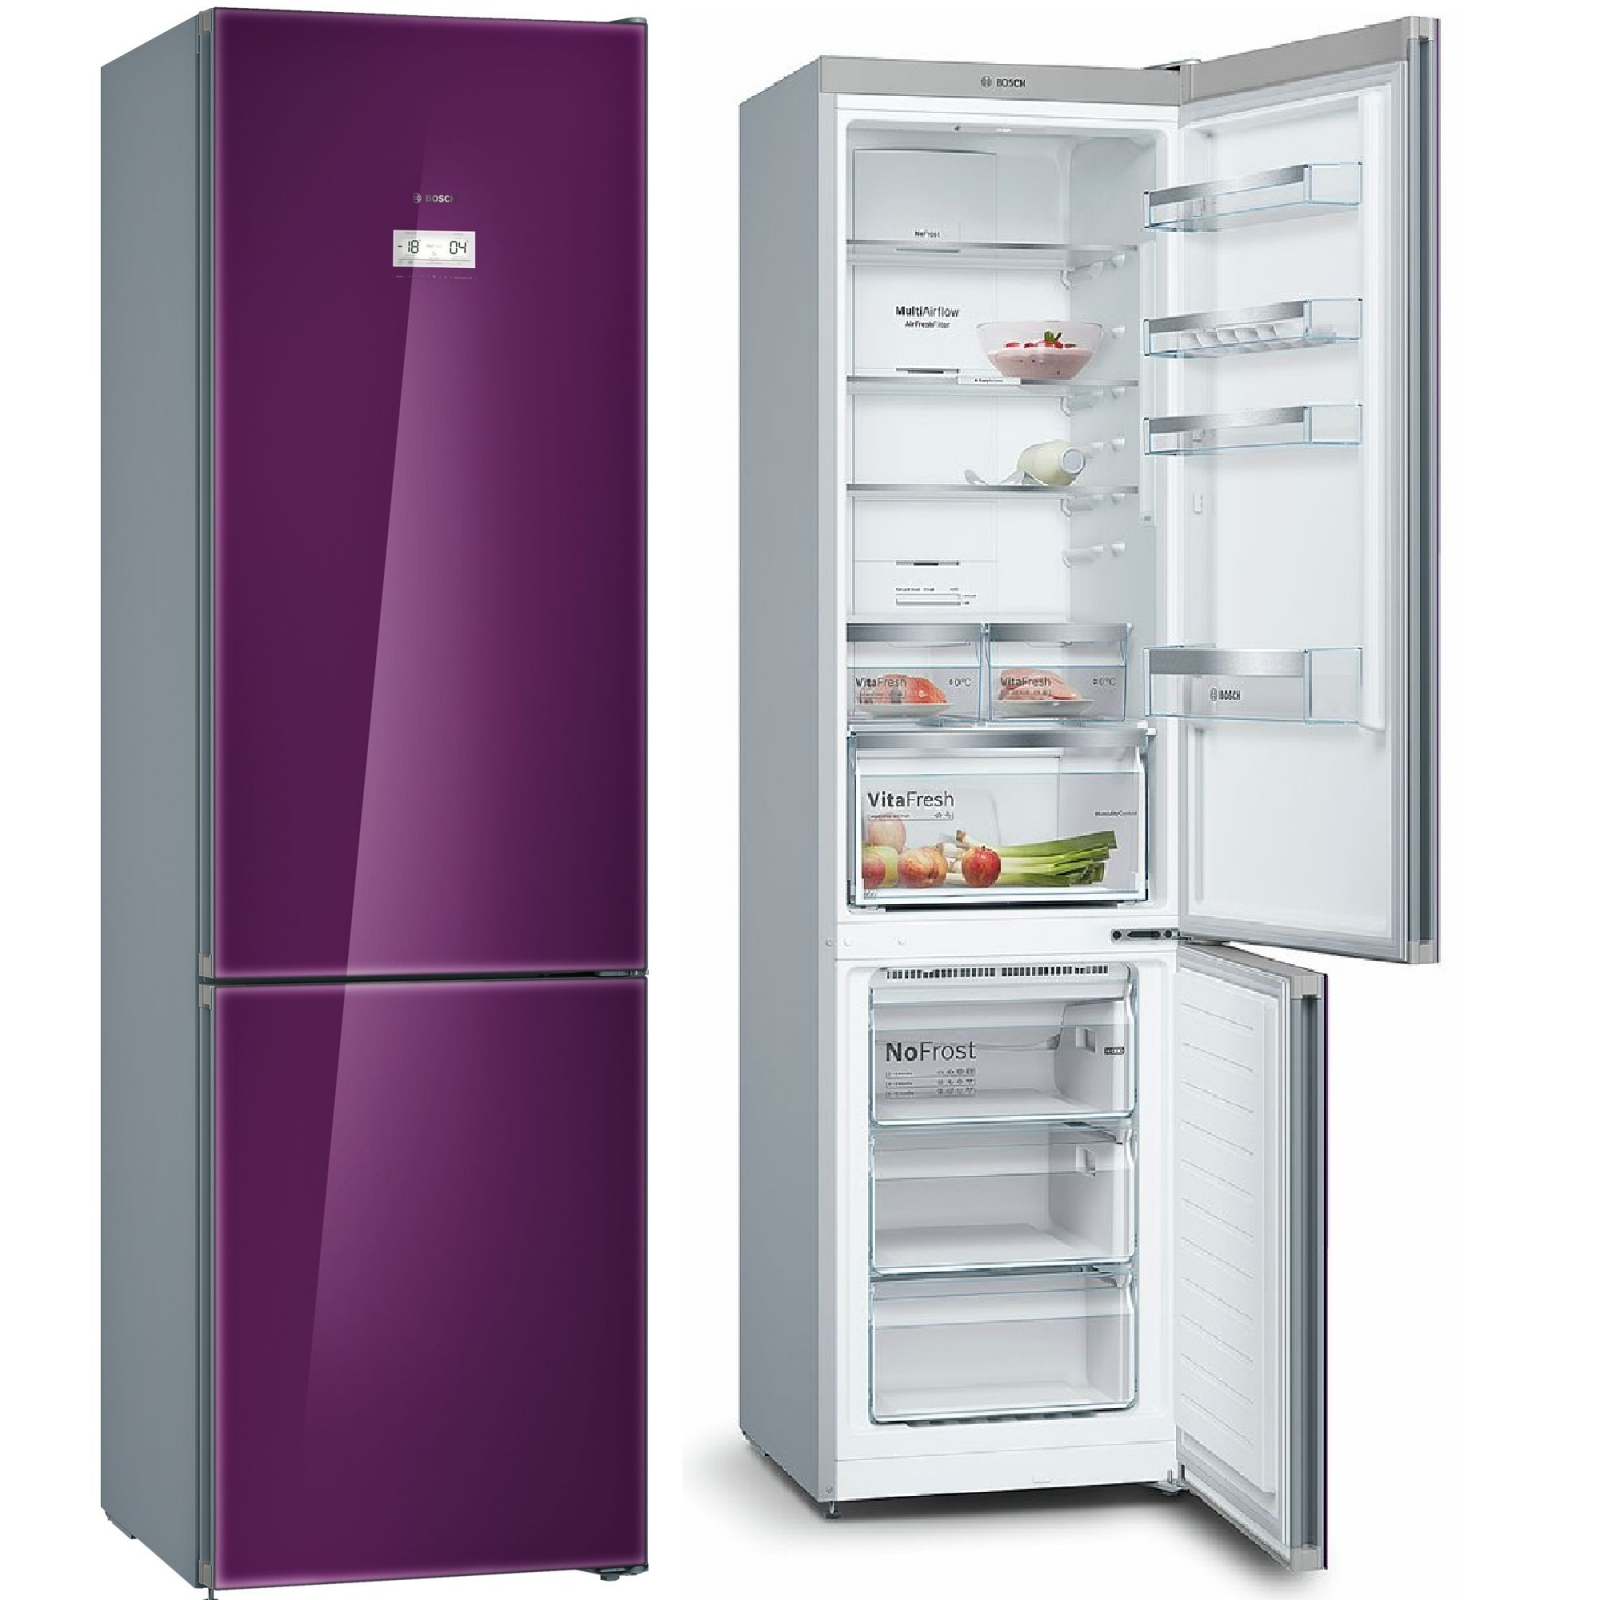 холодильник bosch kgn39la3ar, купить в Красноярске холодильник bosch kgn39la3ar,  купить в Красноярске дешево холодильник bosch kgn39la3ar, купить в Красноярске минимальной цене холодильник bosch kgn39la3ar